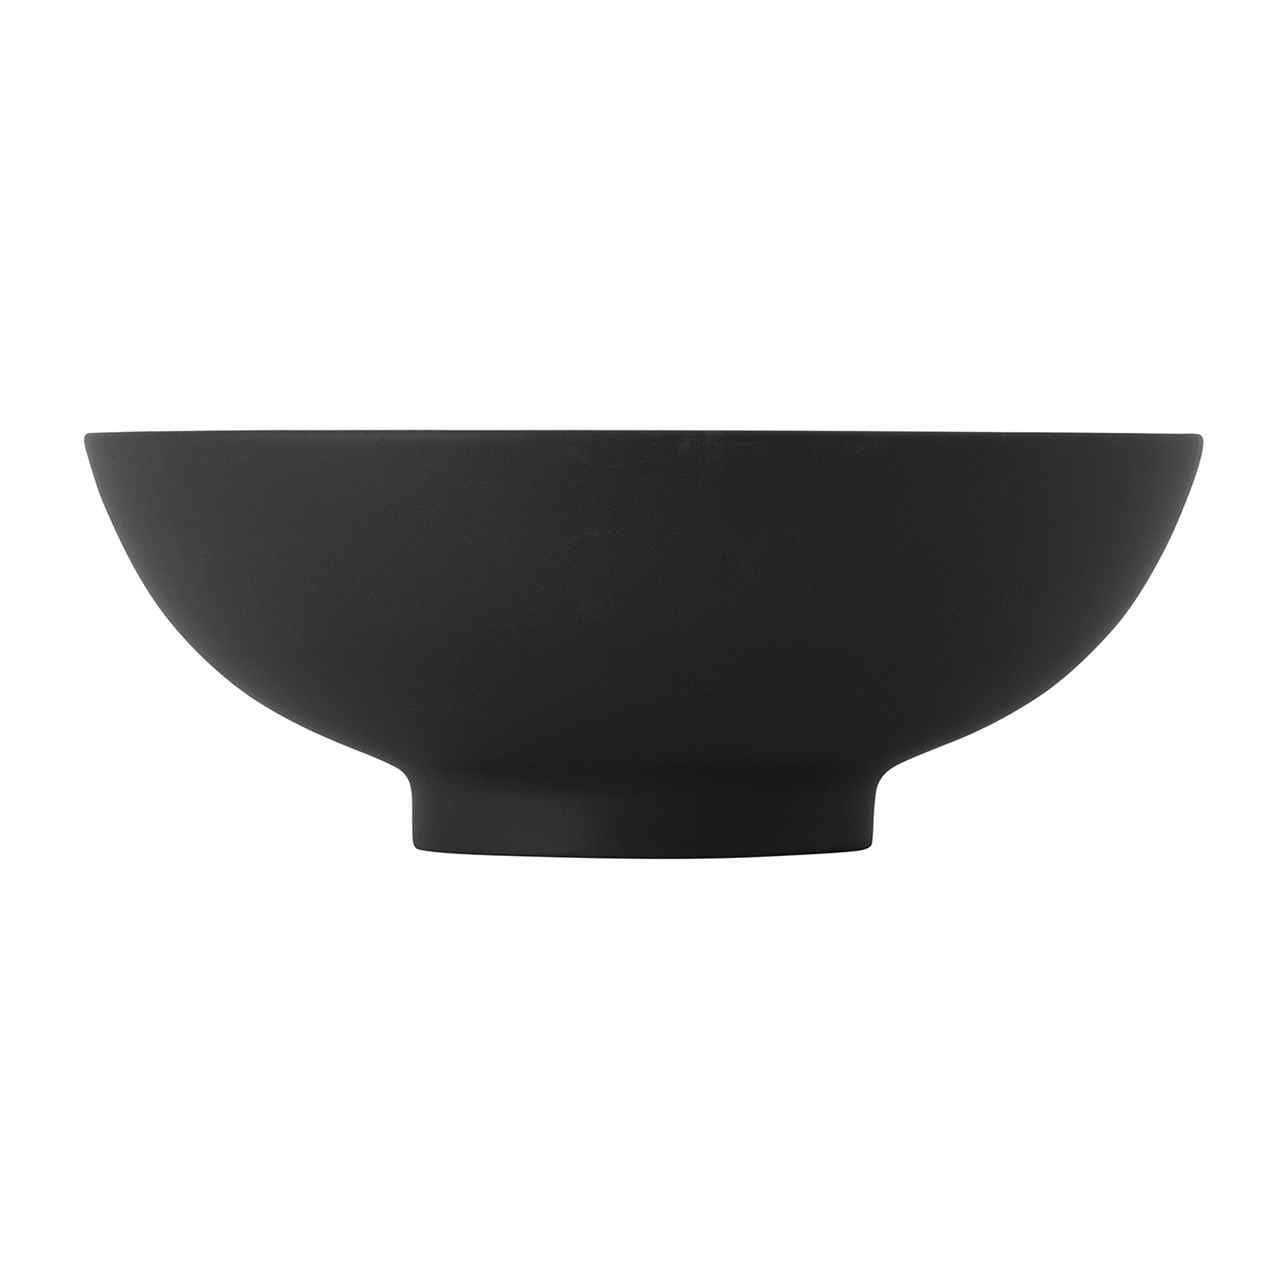 Olio Black Serving Bowl 21cm